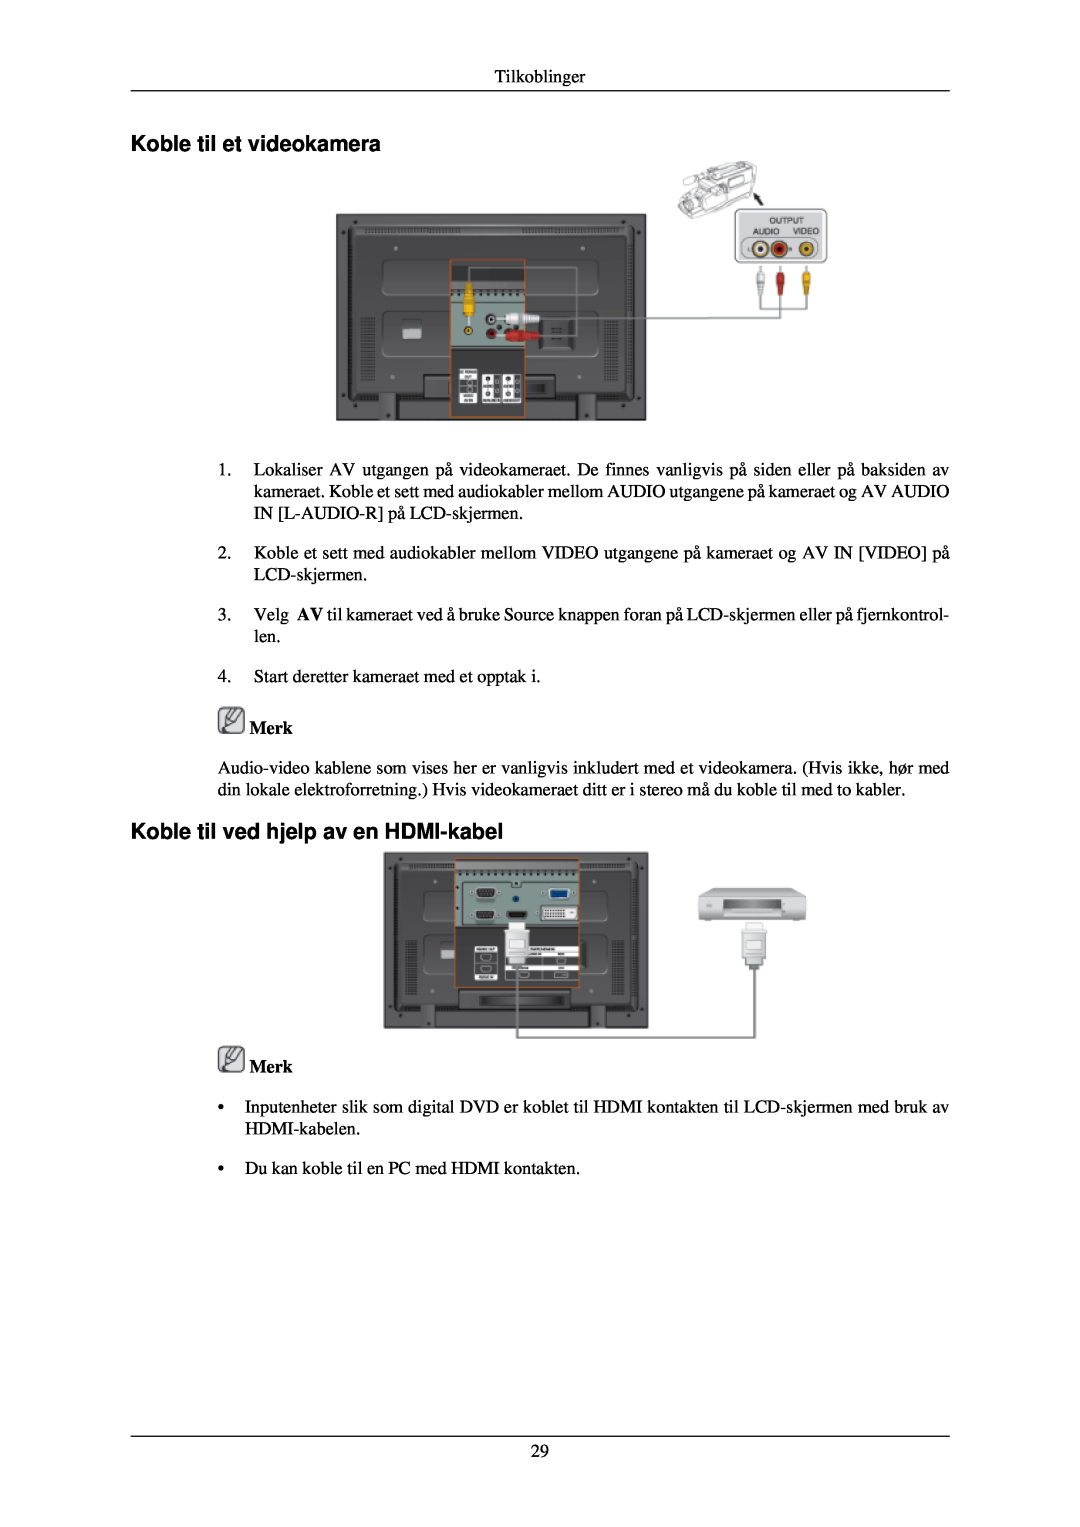 Samsung LH40TCUMBG/EN, LH46TCUMBC/EN, LH40TCQMBG/EN Koble til et videokamera, Koble til ved hjelp av en HDMI-kabel, Merk 